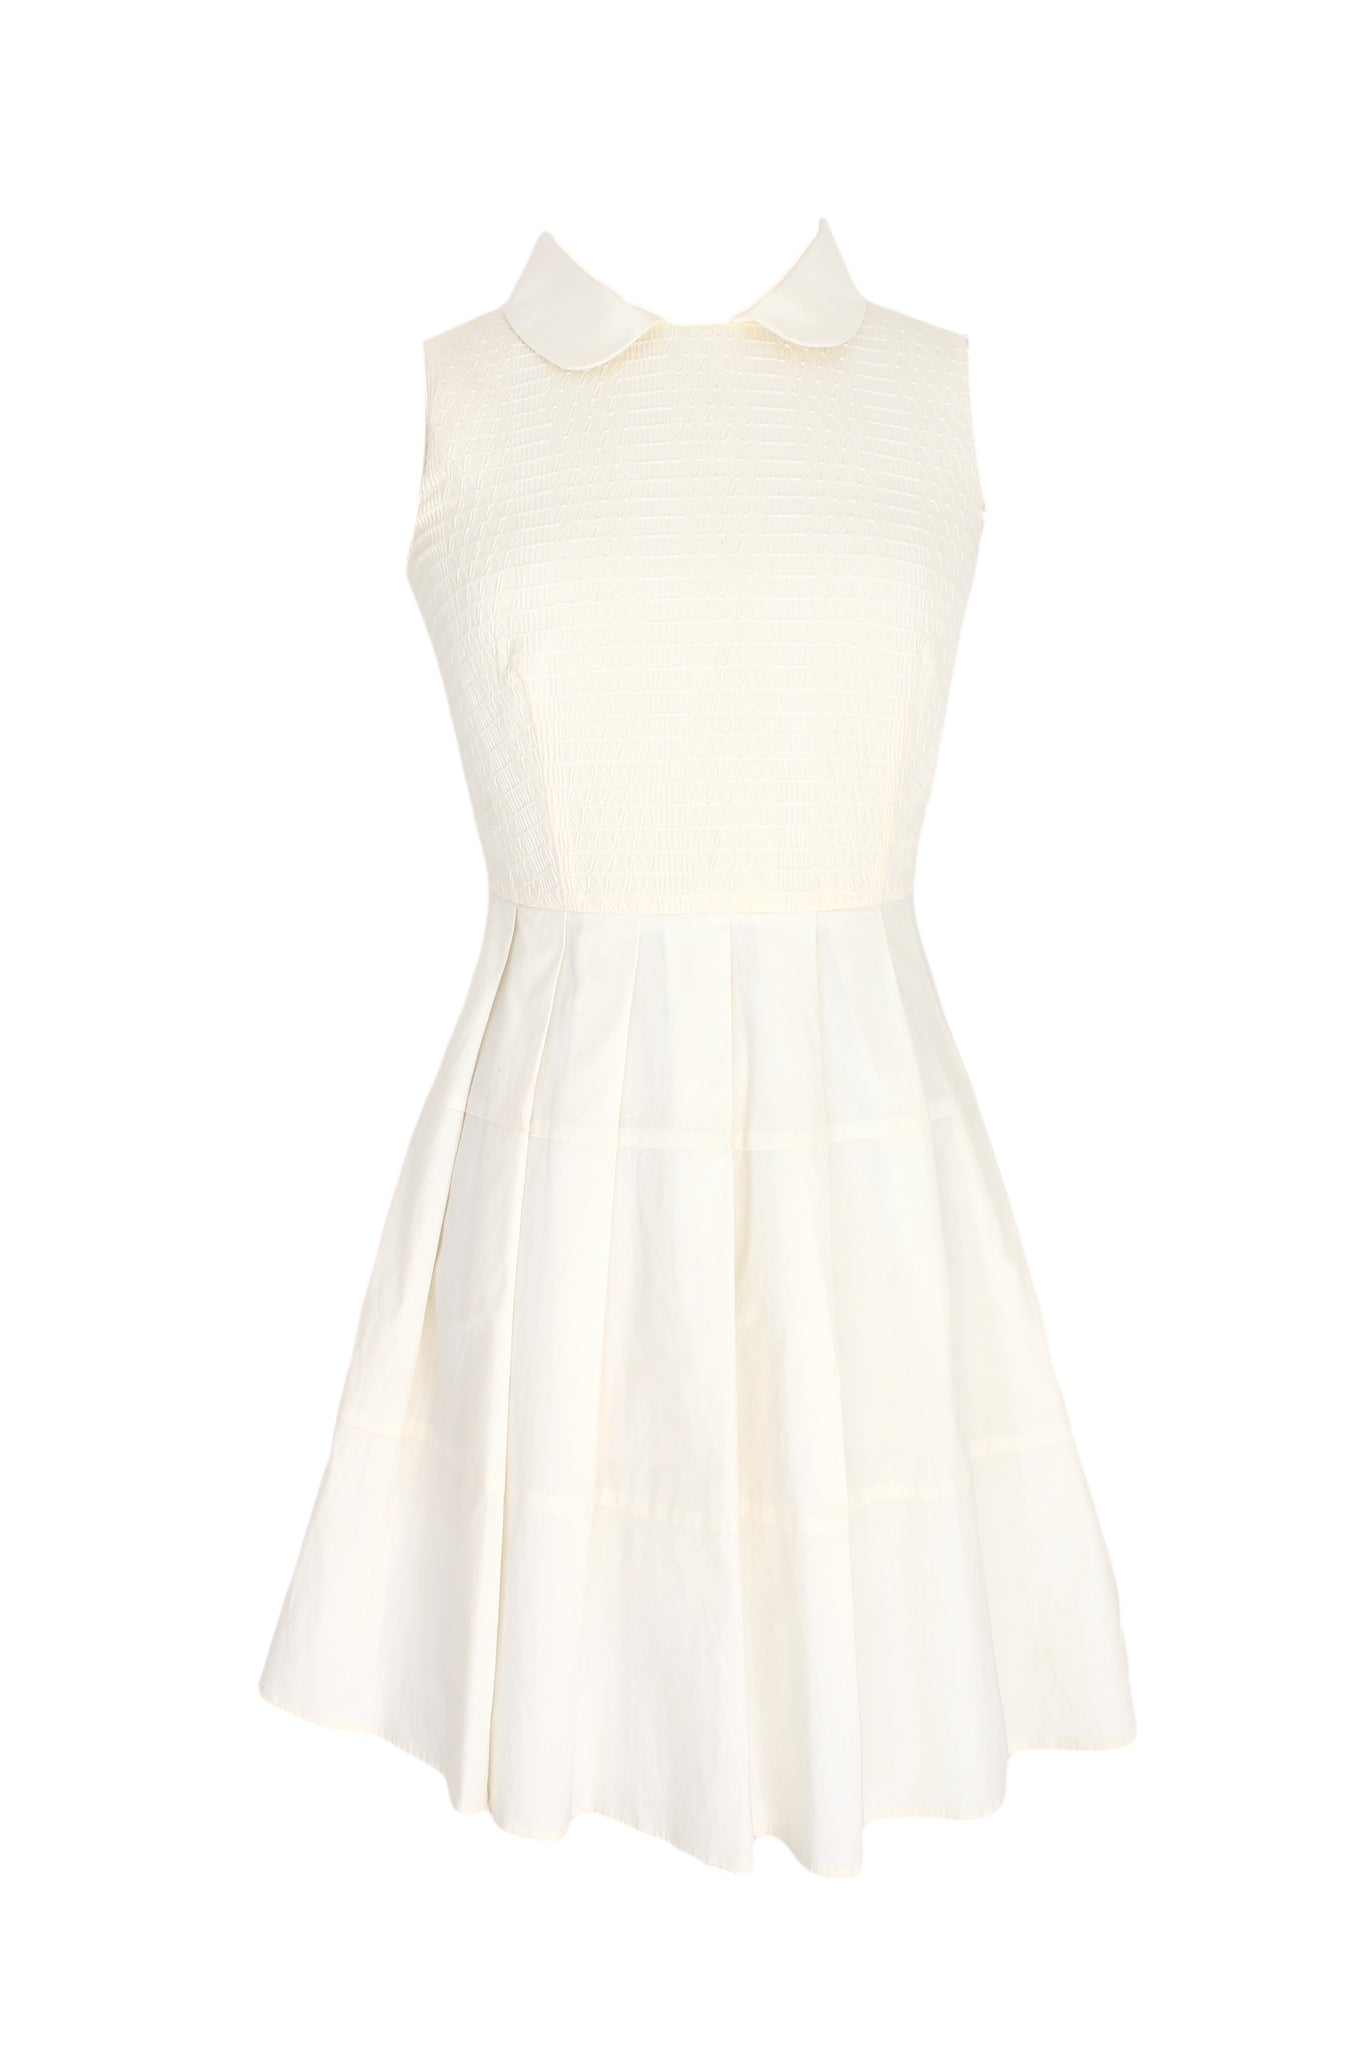 Valentino White Cotton Sheath Dress 2000s